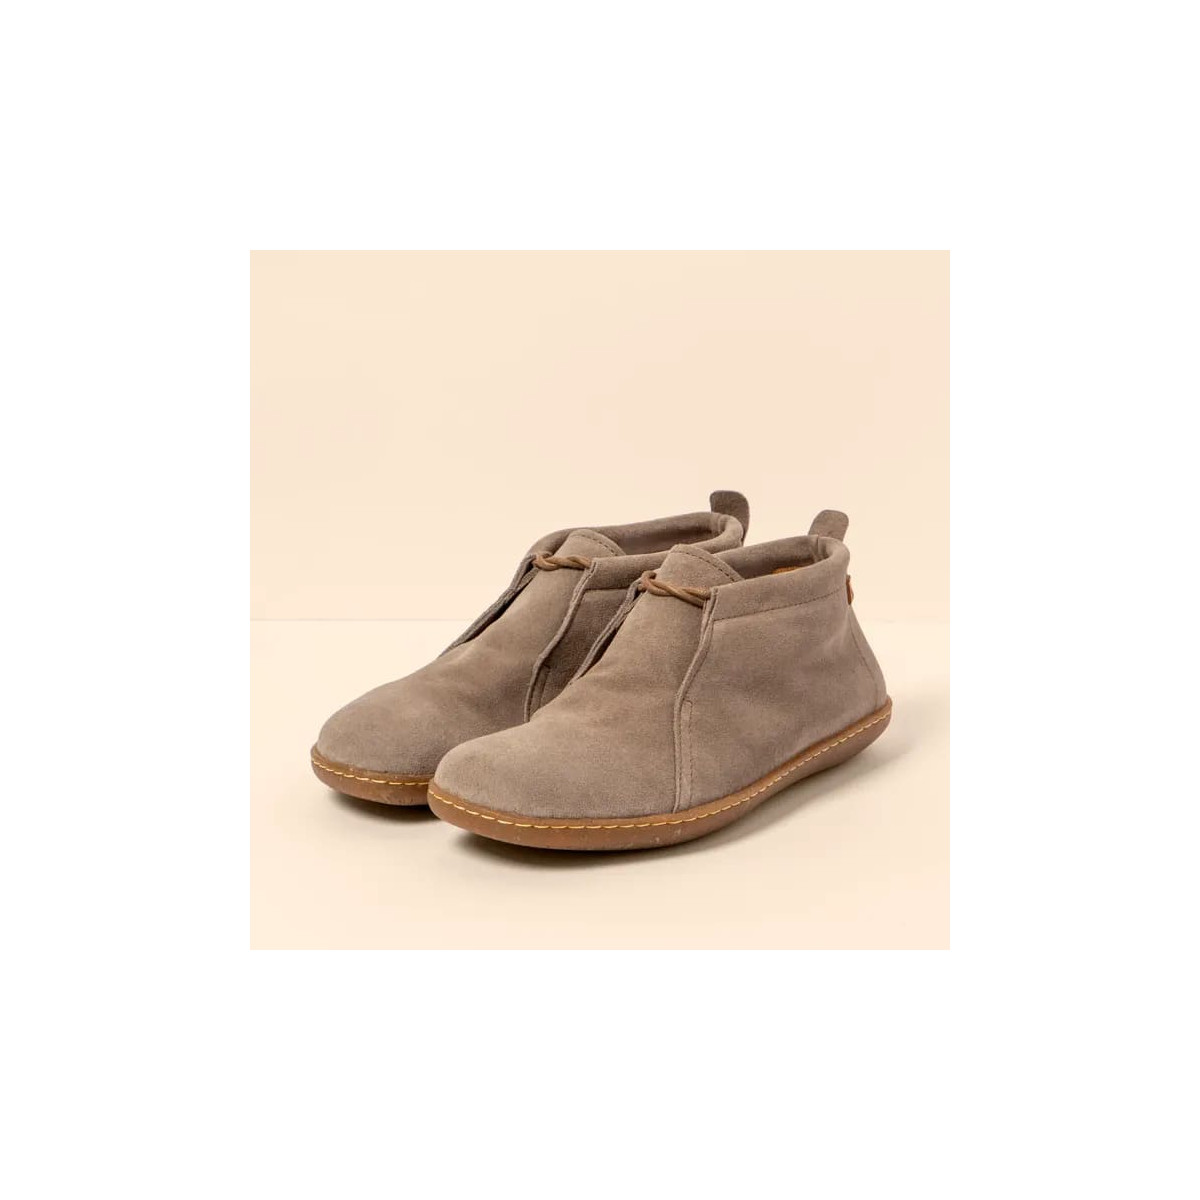 Chaussures confortables lacées en daim - Beige - El naturalista